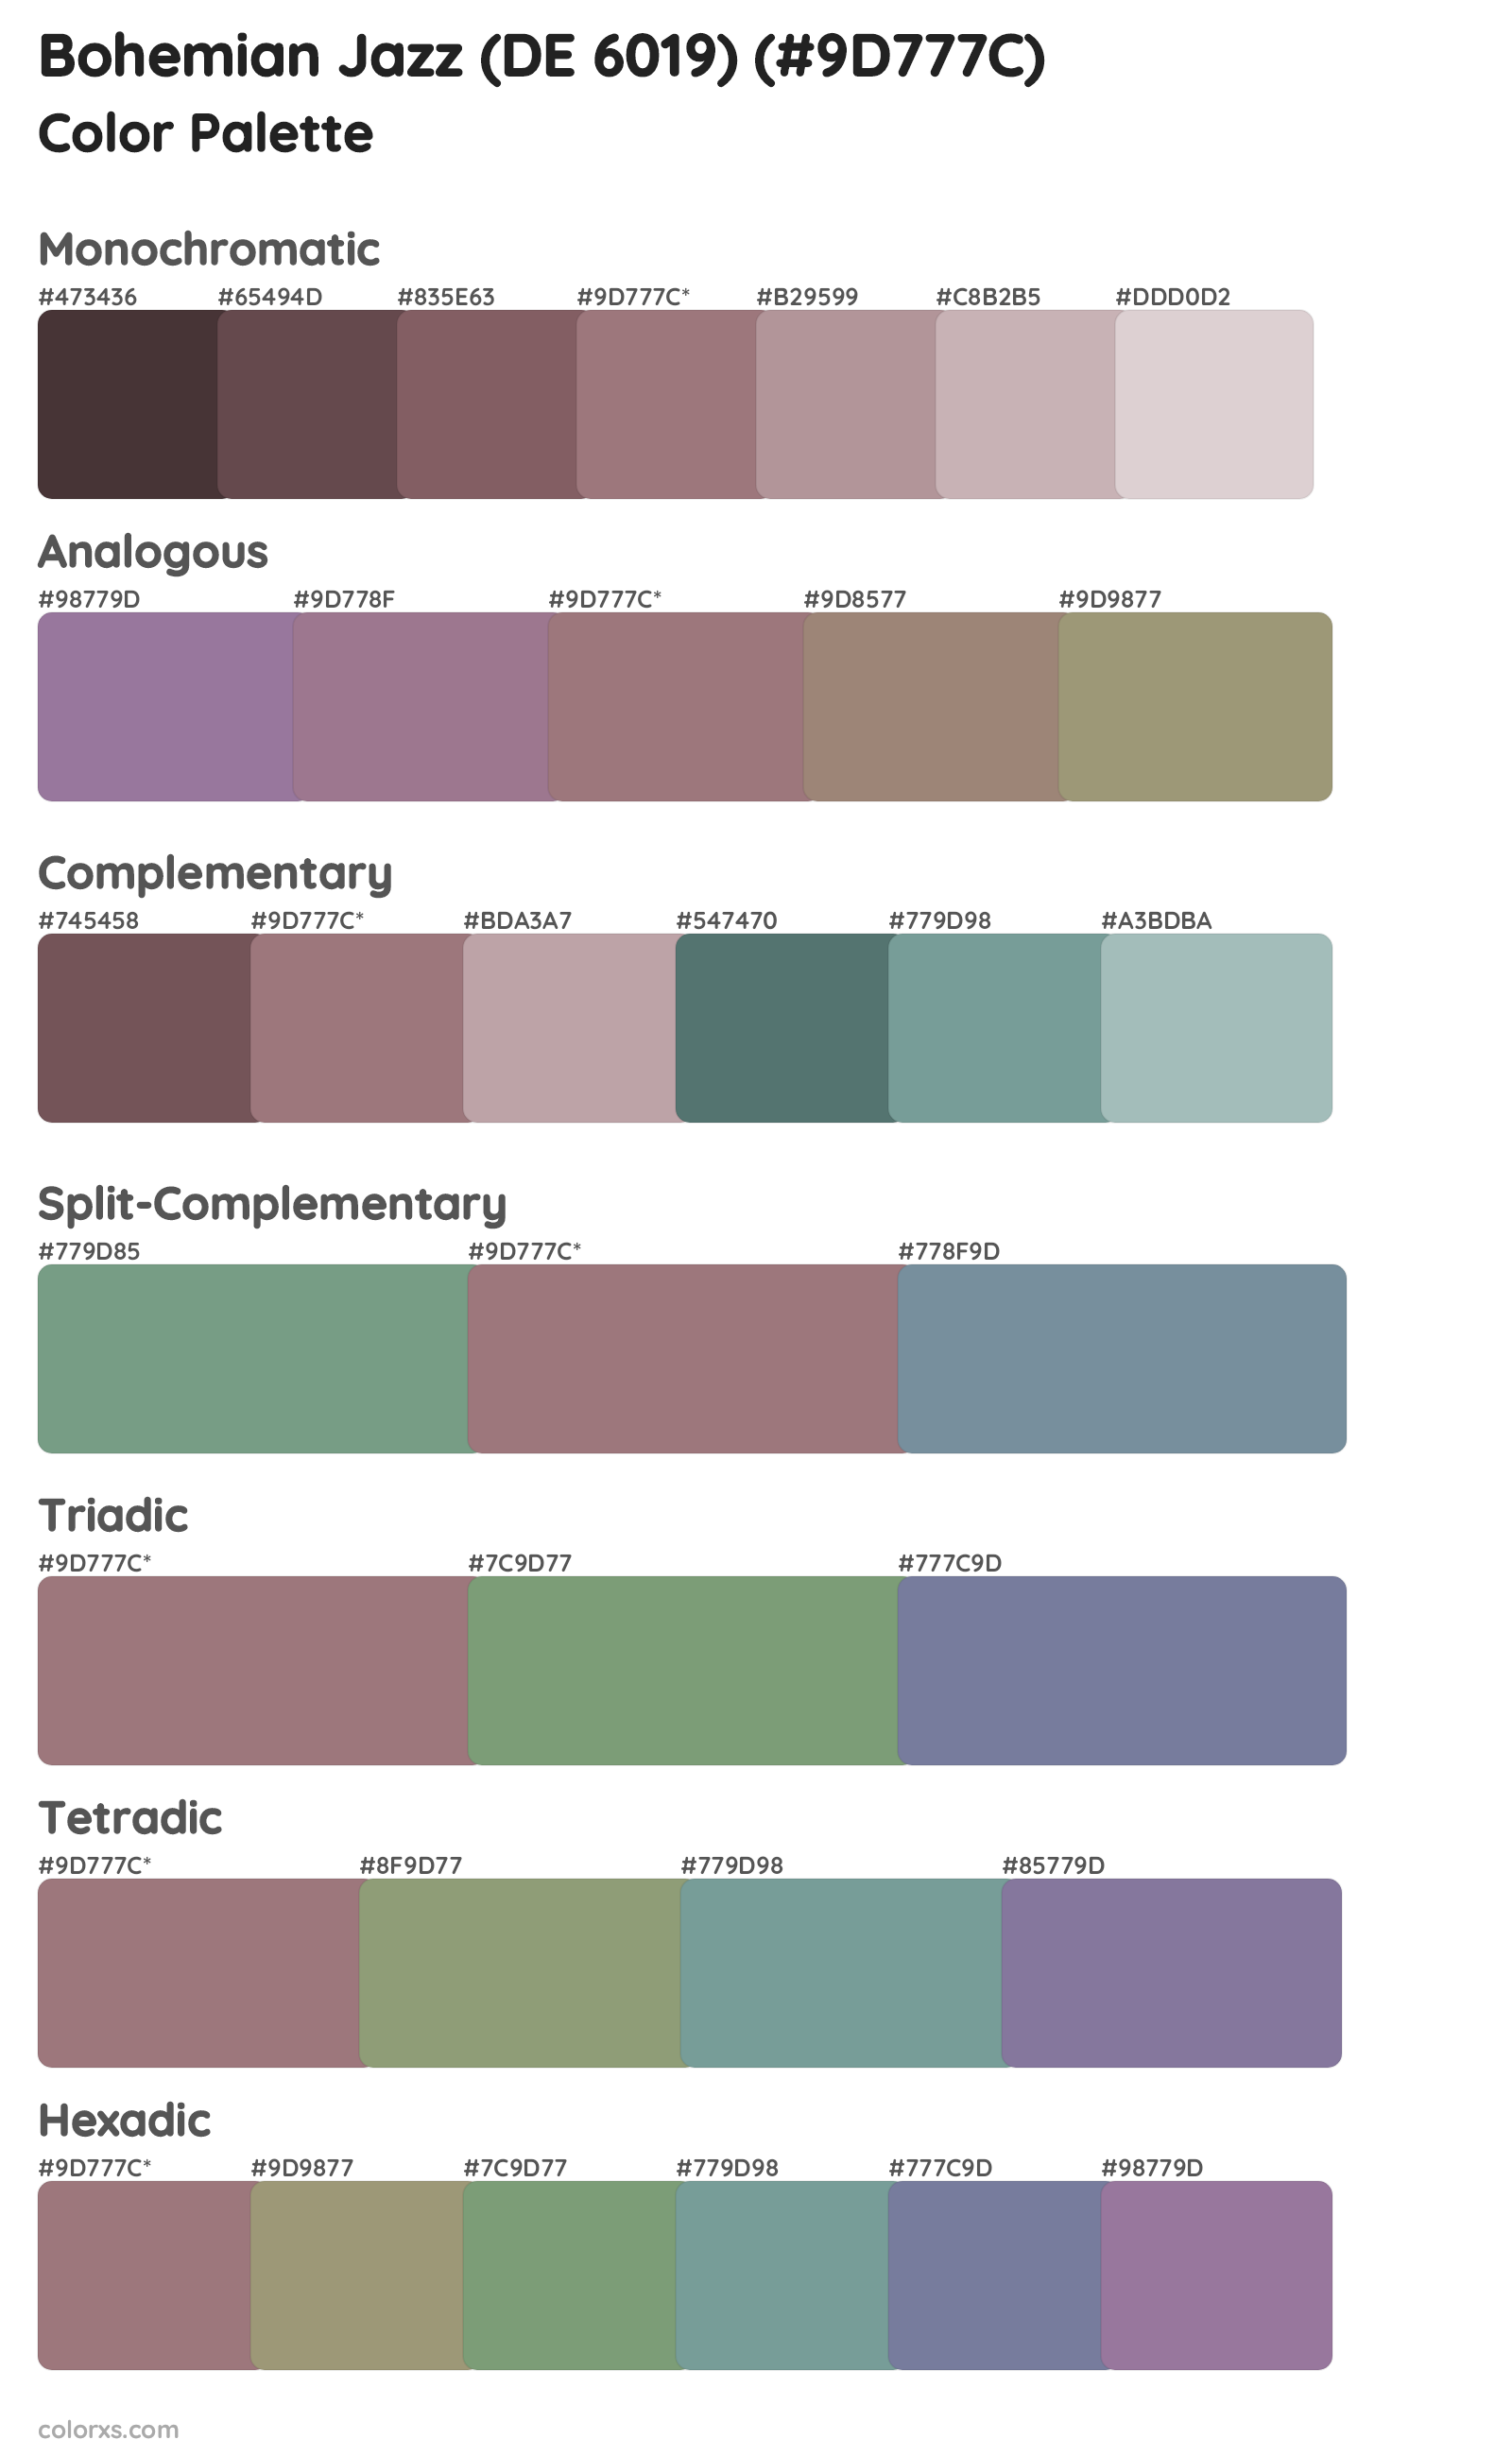 Bohemian Jazz (DE 6019) Color Scheme Palettes